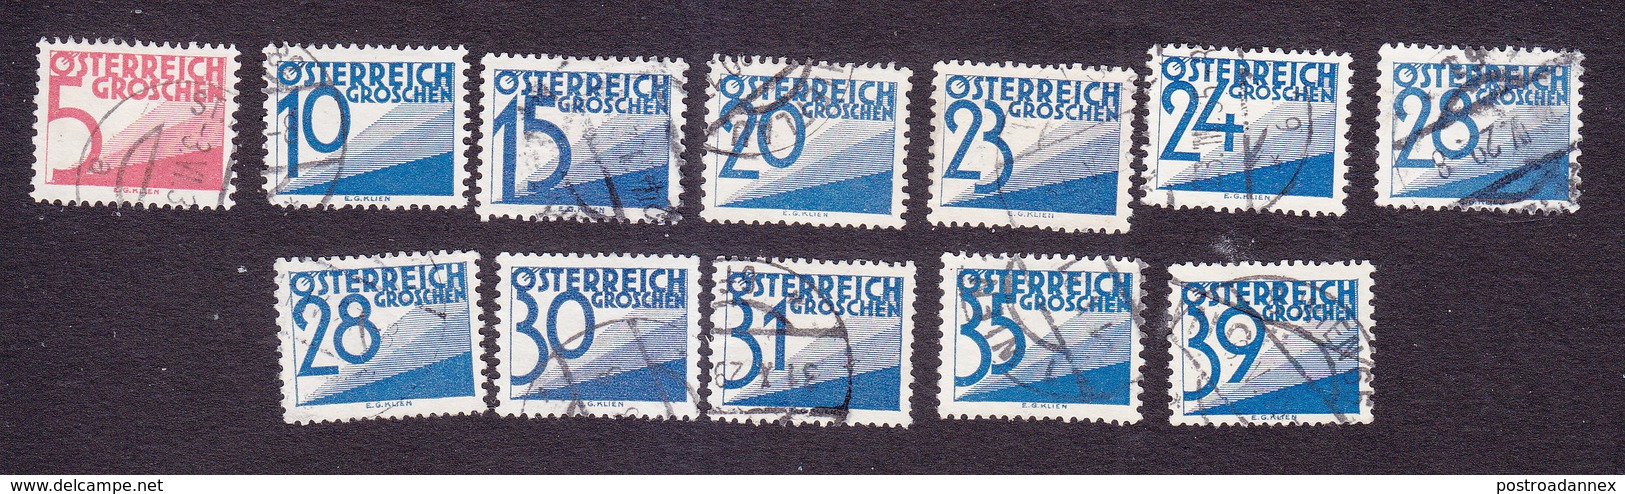 Austria, Scott #J136, J139, J142, J145-J152, Used, Postage Due, Issued 1925 - Postage Due